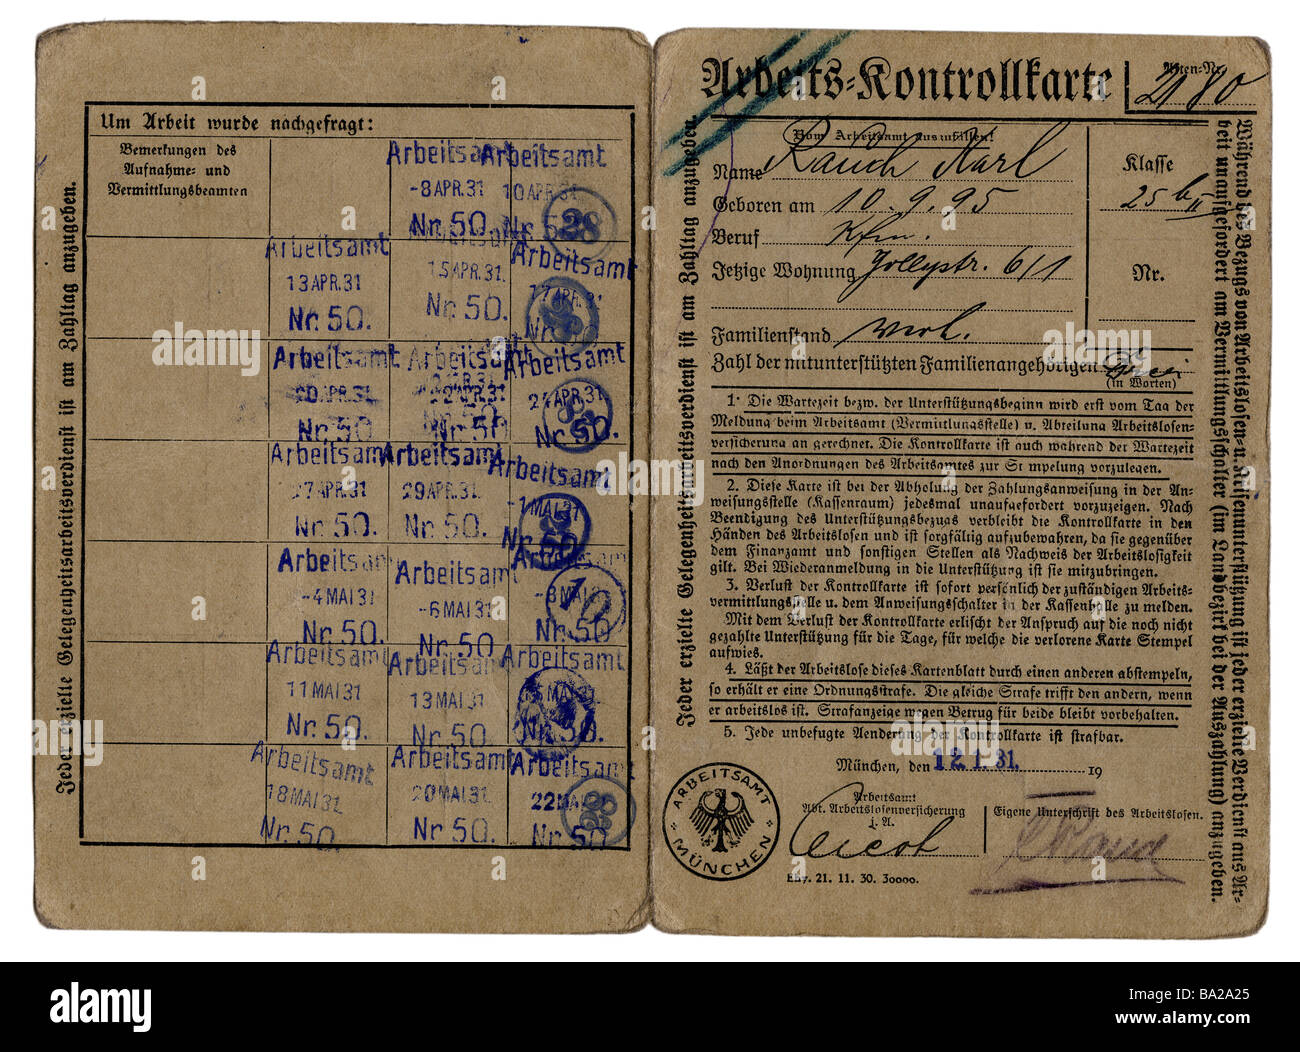 Personen, Arbeit/Arbeiter, Arbeitsentlassung/Arbeitslosigkeit, Arbeitsprüfungskarte, Eintragskarte von Karl Rauch, Arbeitsamt München, ausgestellt am 12.1.1931, Stockfoto